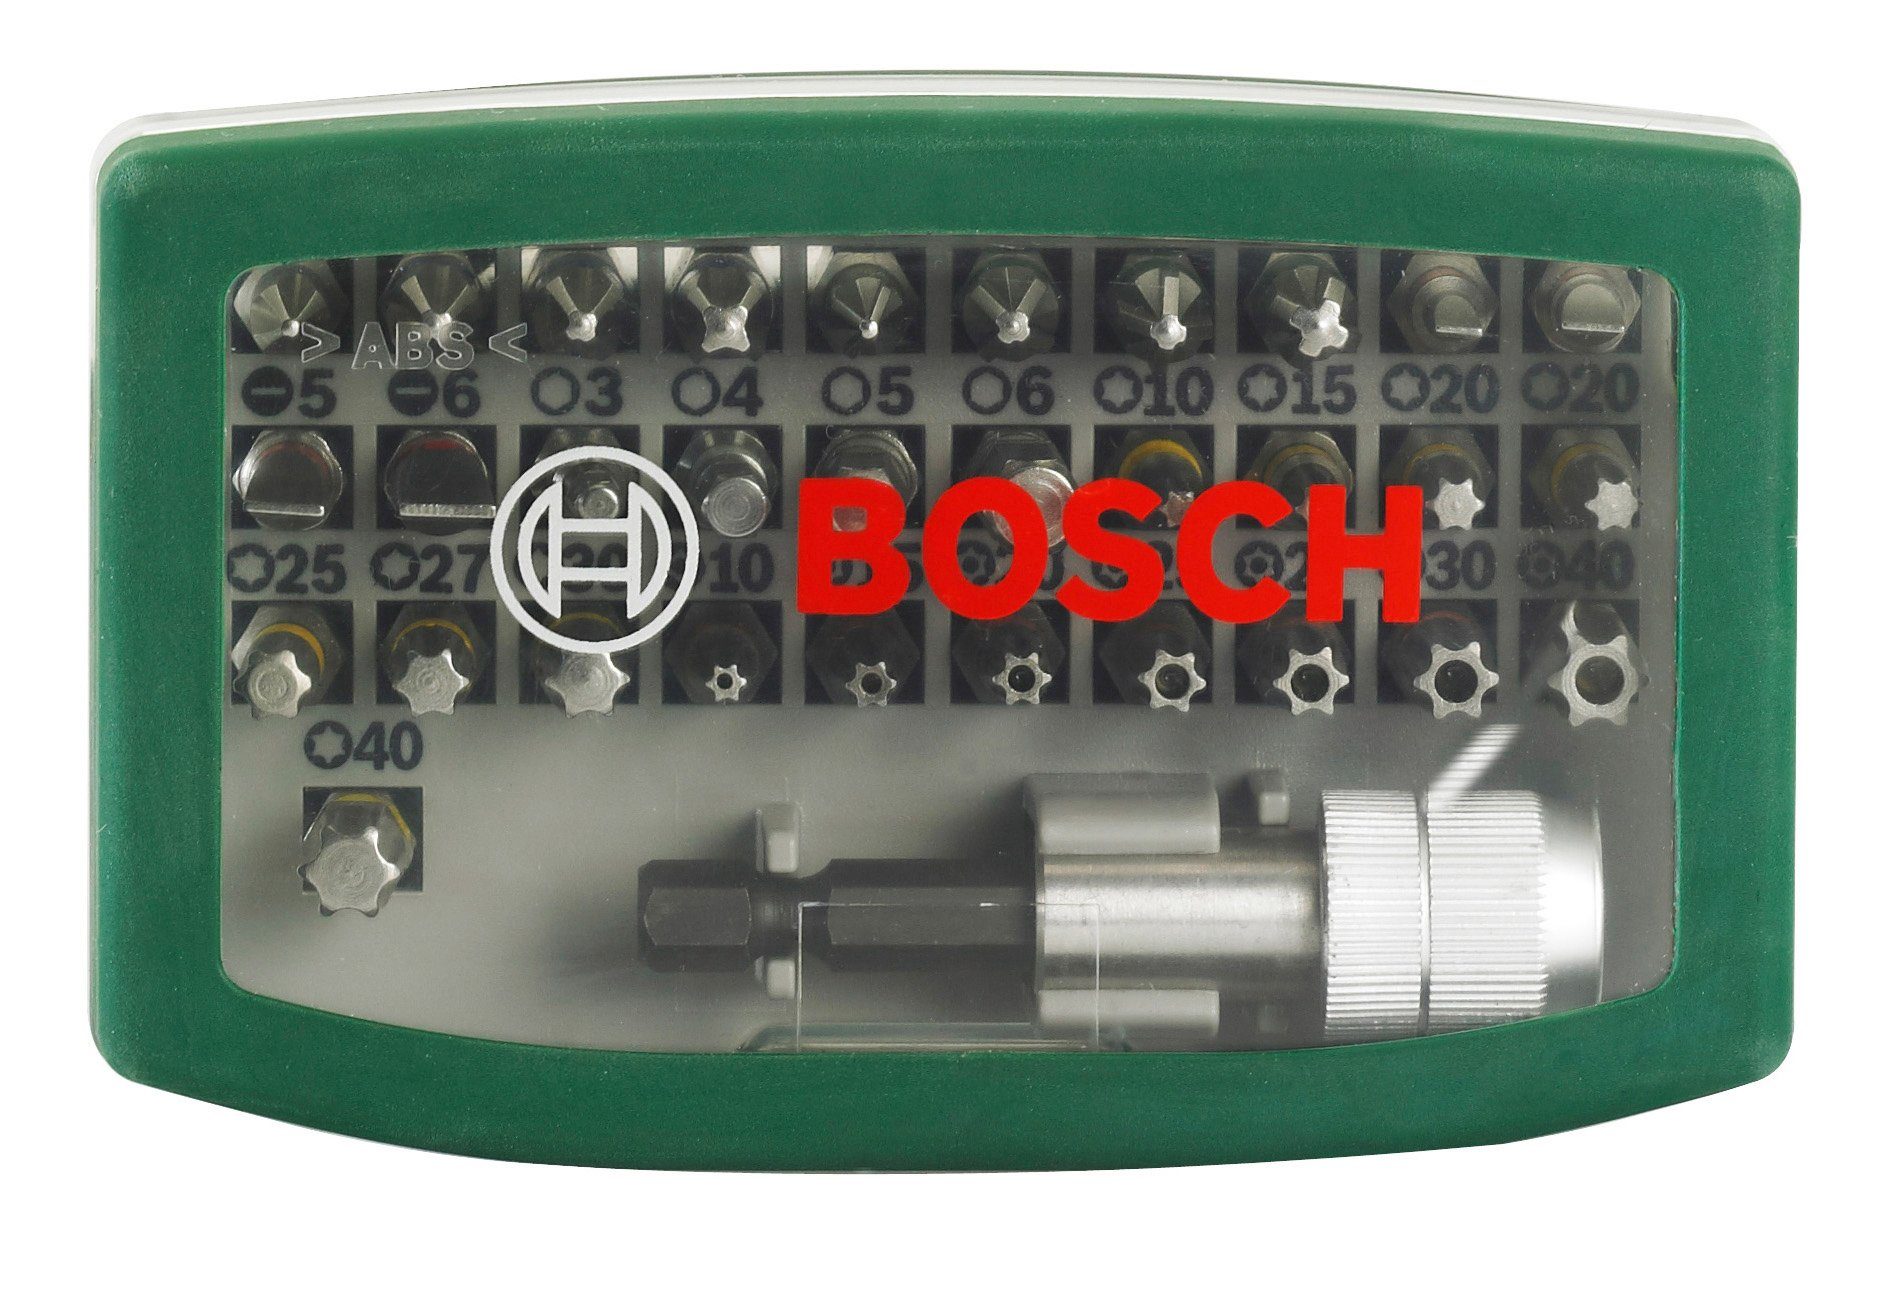 Bosch Home & Garden Bit-Set, 32-St., mit Farbcodierung